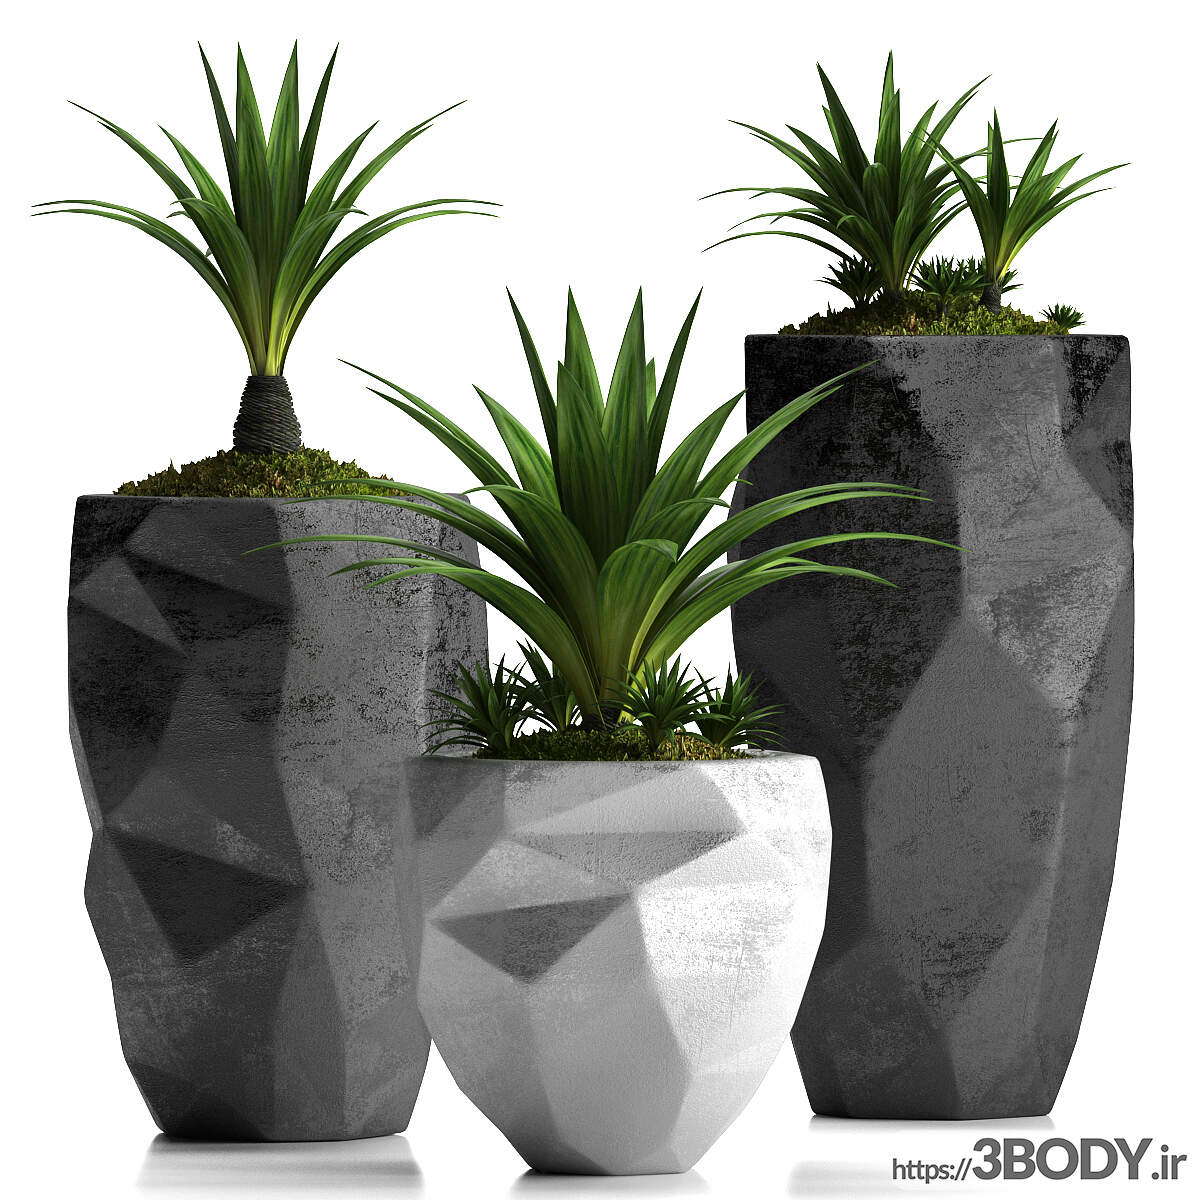 مدل سه بعدی مجموعه گیاهان گلدانی عکس 1